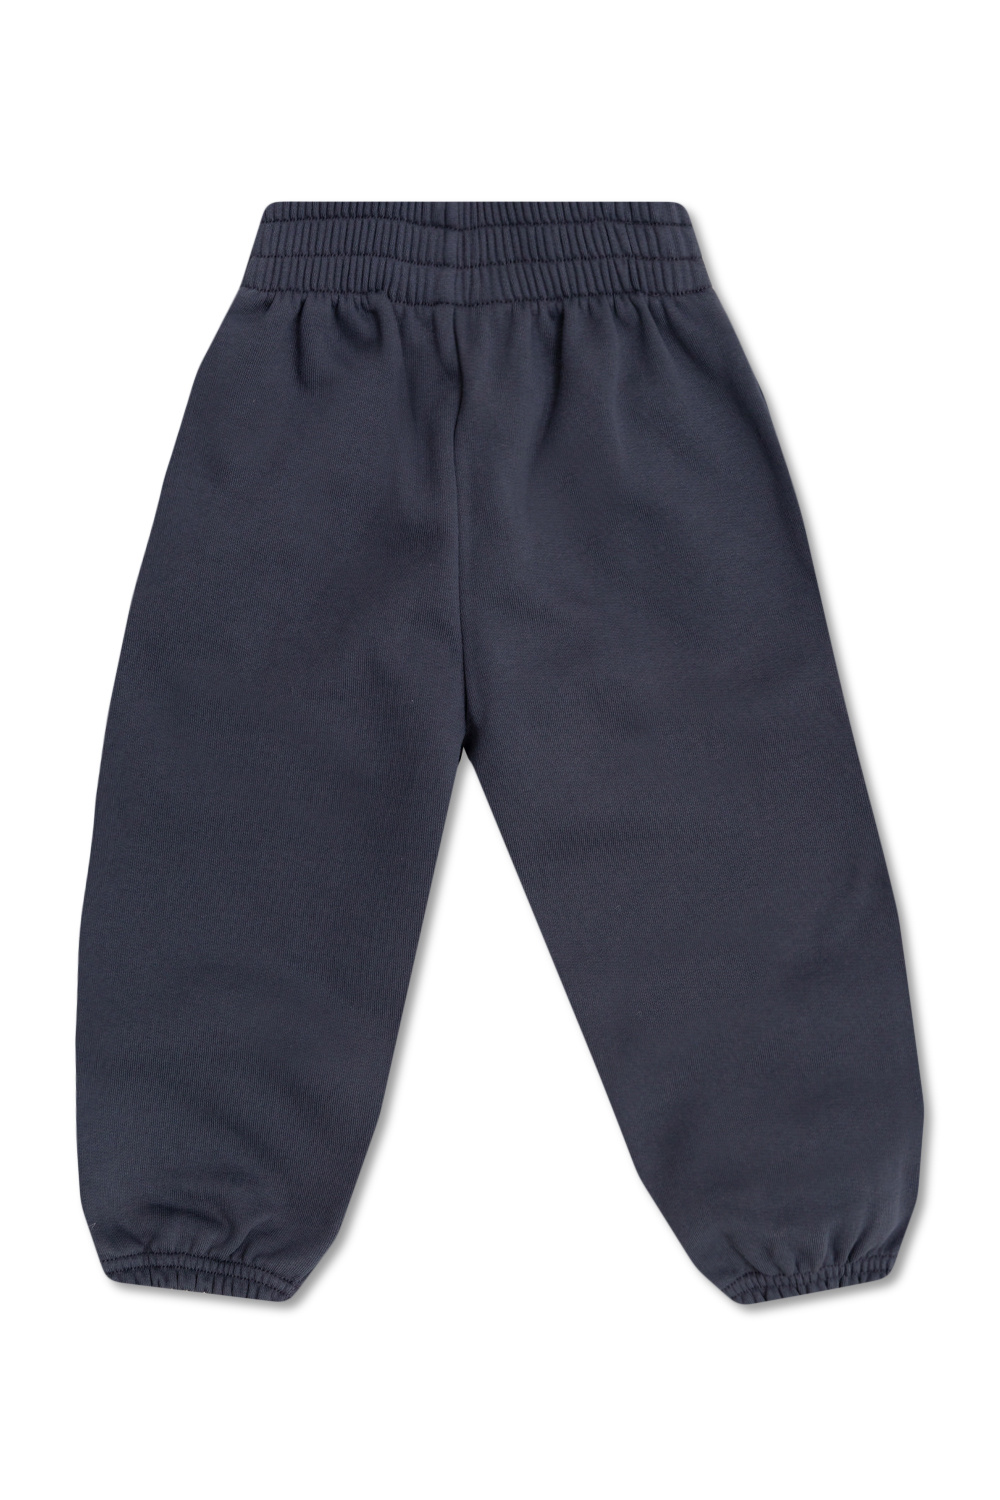 Balenciaga Kids Mens shorts adidas Originals C Short HR3323